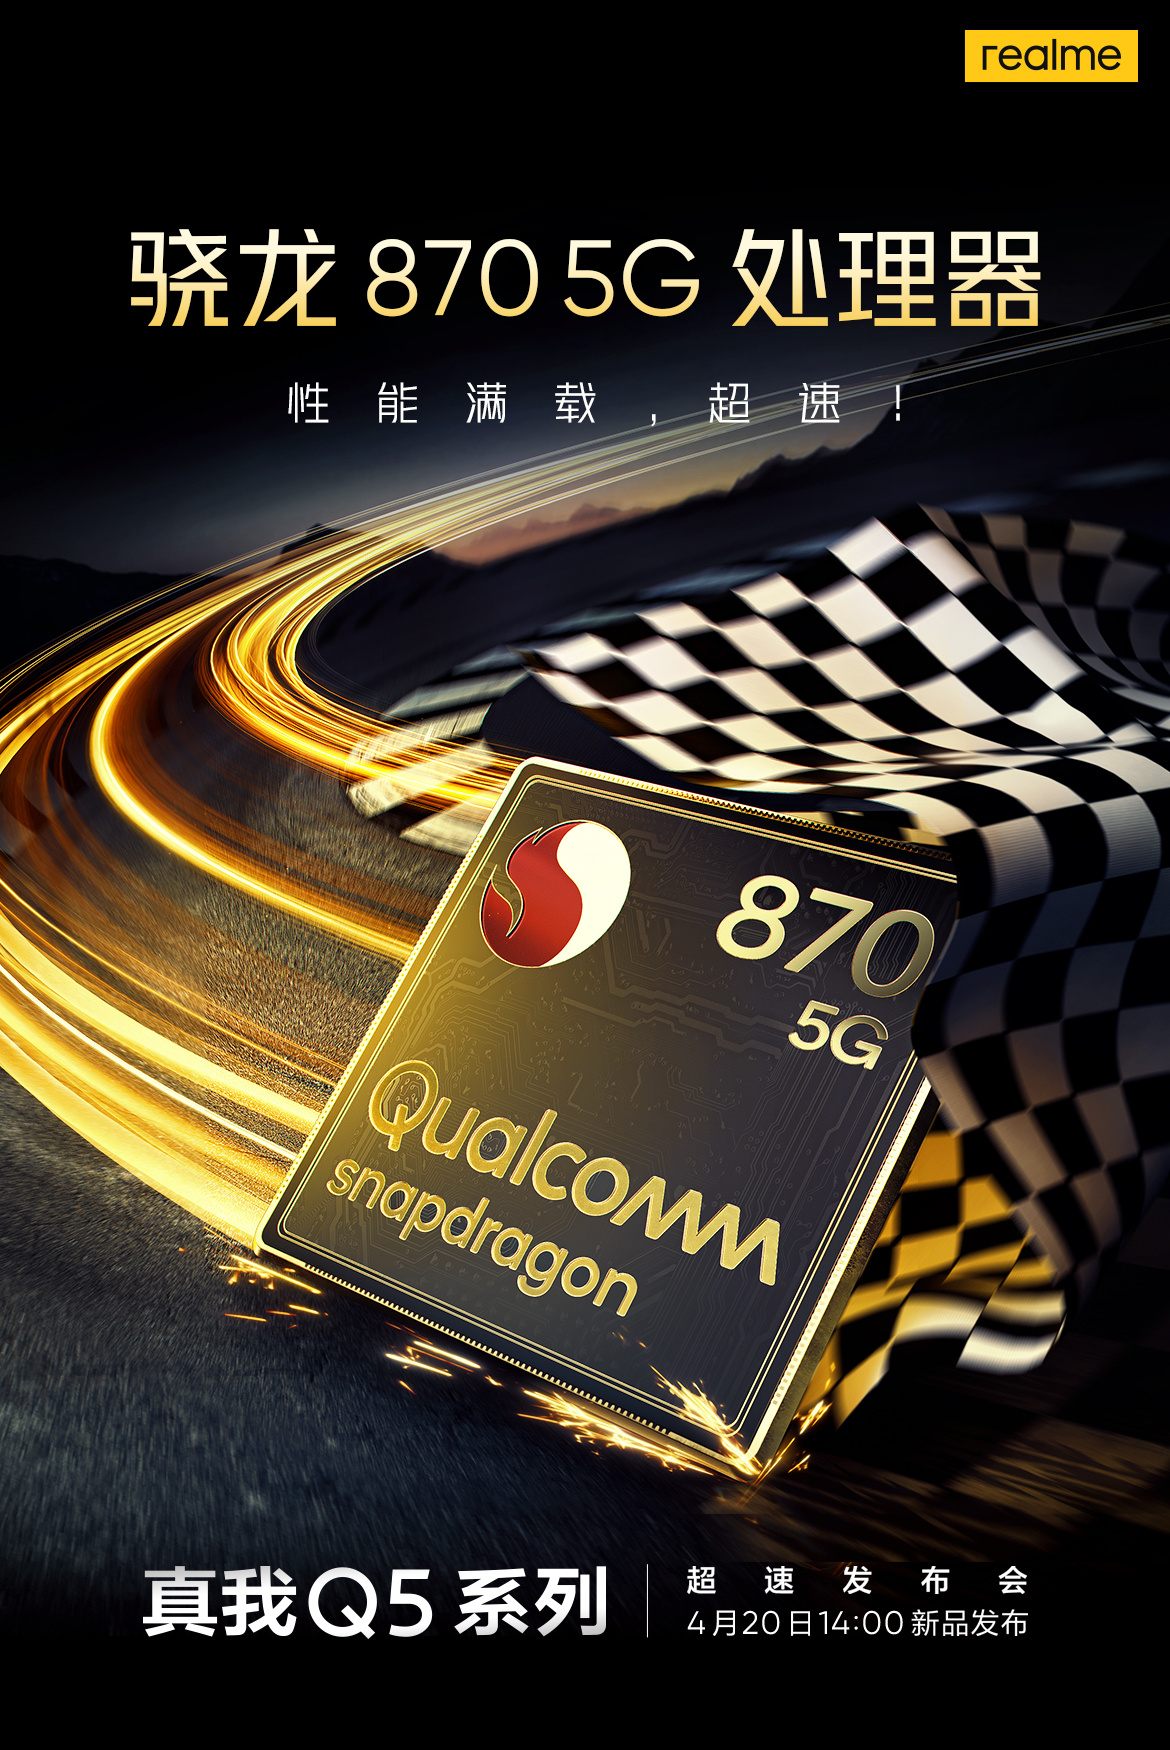 Realme Q5 Pro has Snapdragon 870